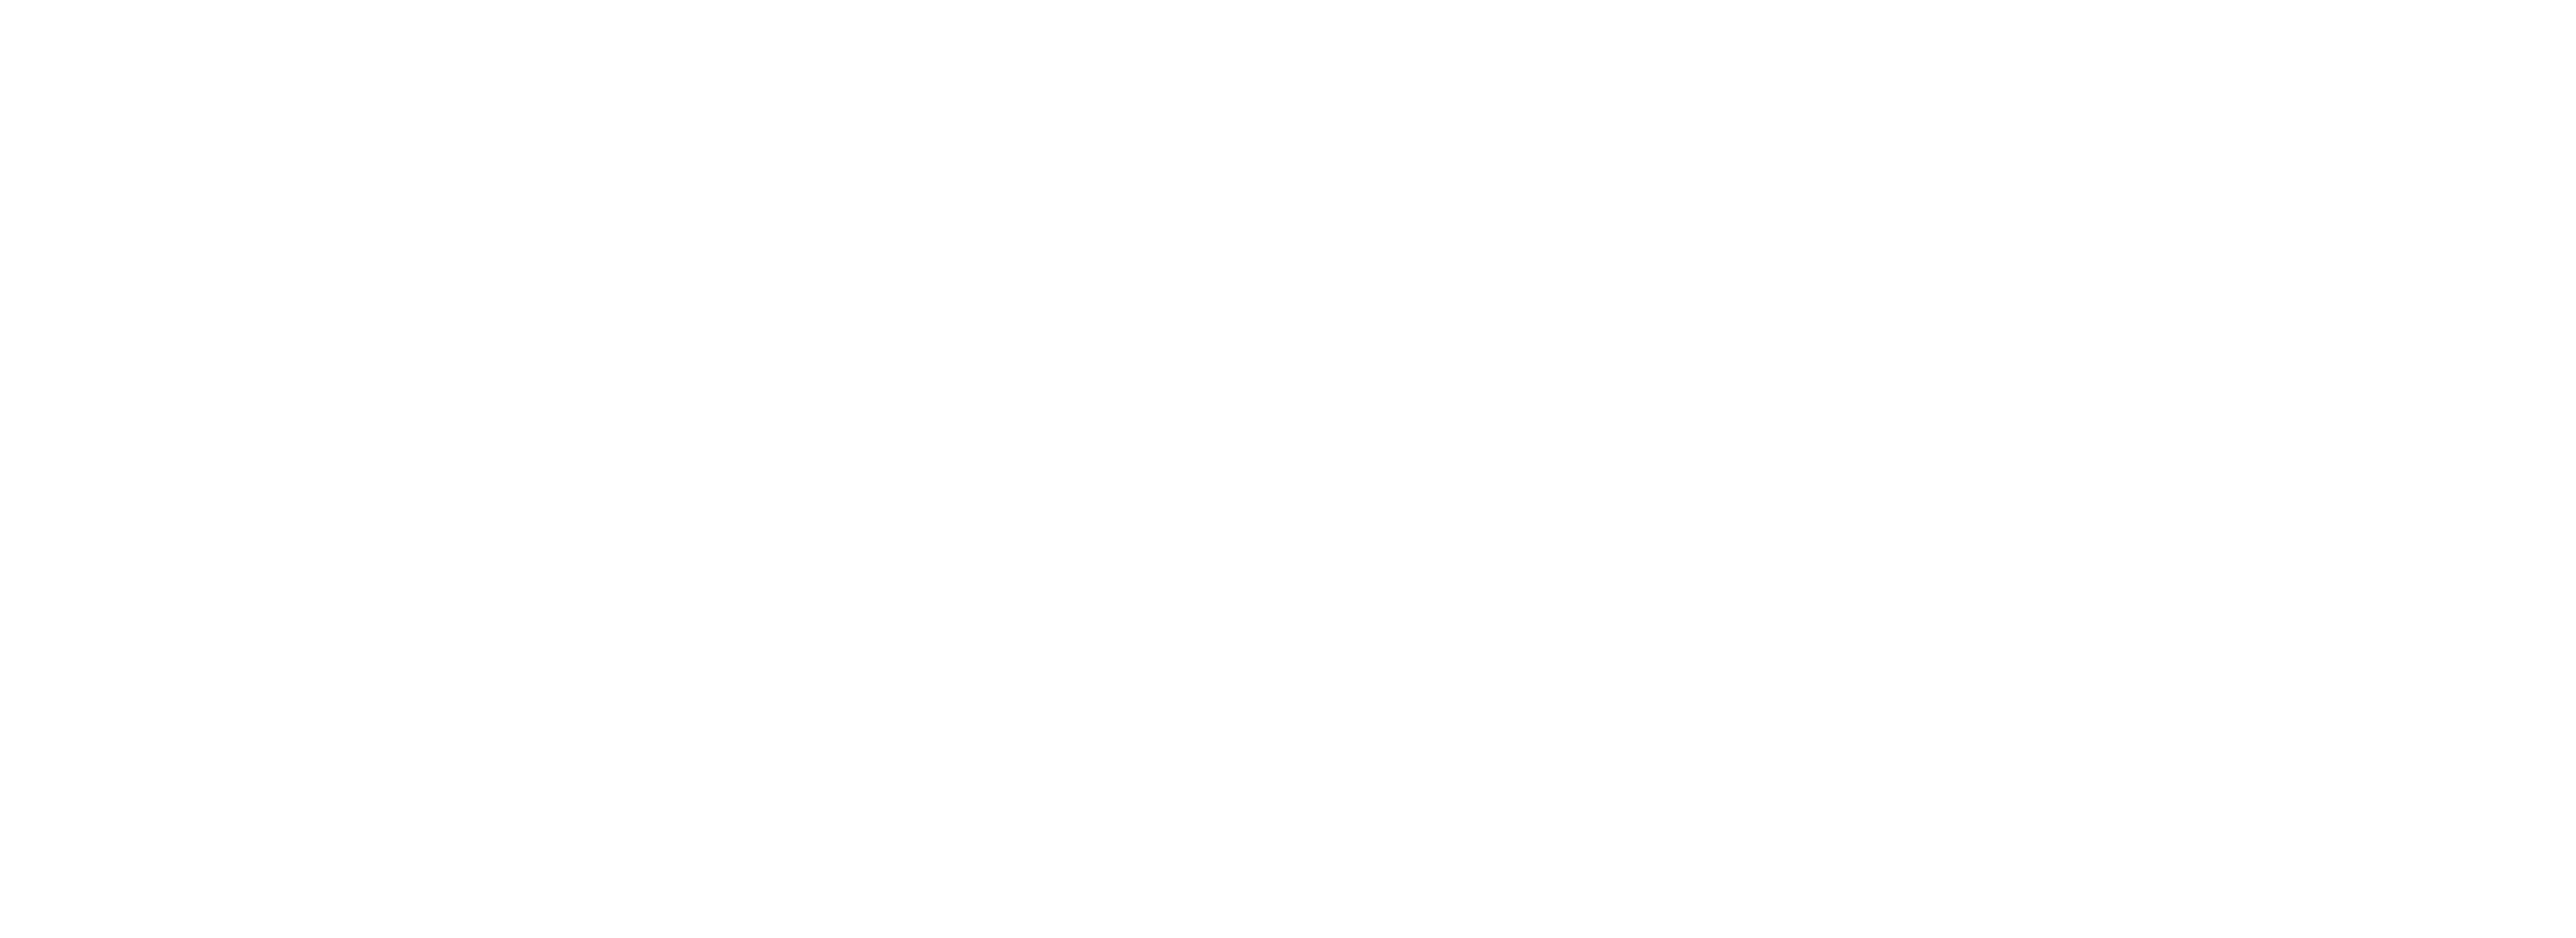 Angel Lagunes